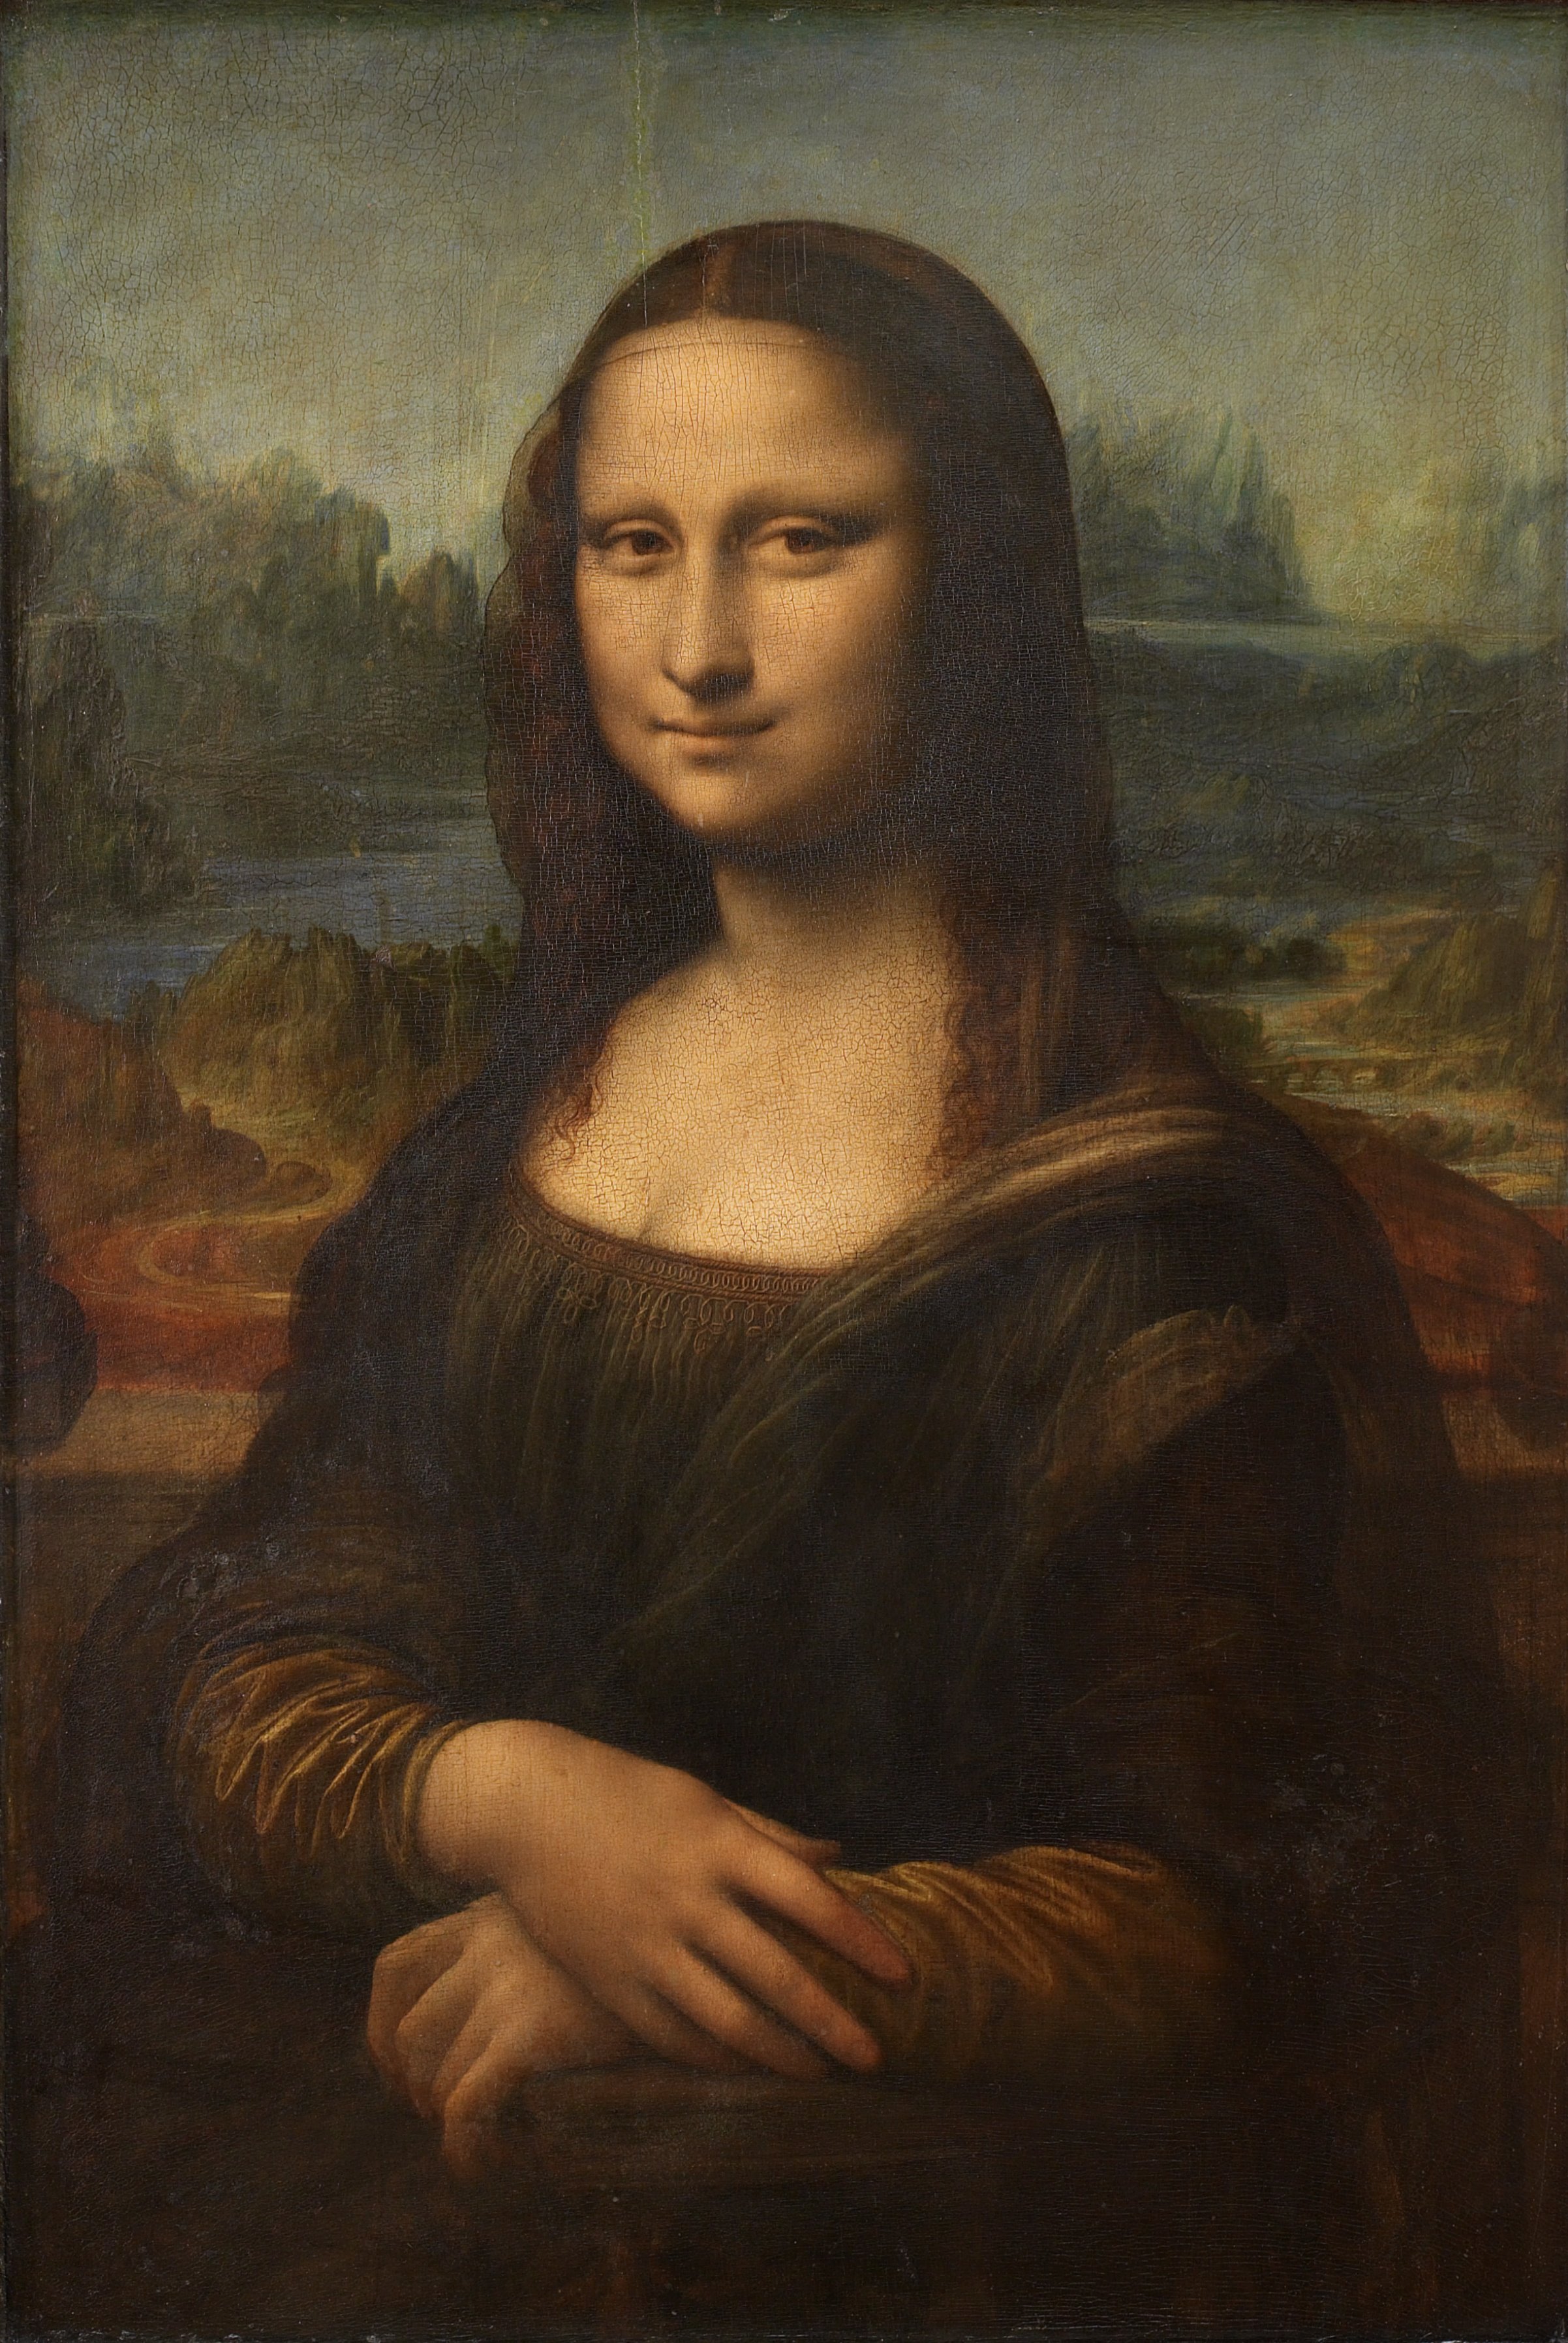 Sur son portrait de Mona Lisa, Léonard a apposé plusieurs couches sur la toile, notamment un glacis, pour adoucir certains contours (le sfumato), et un vernis de protection. © Licence Creative Commons